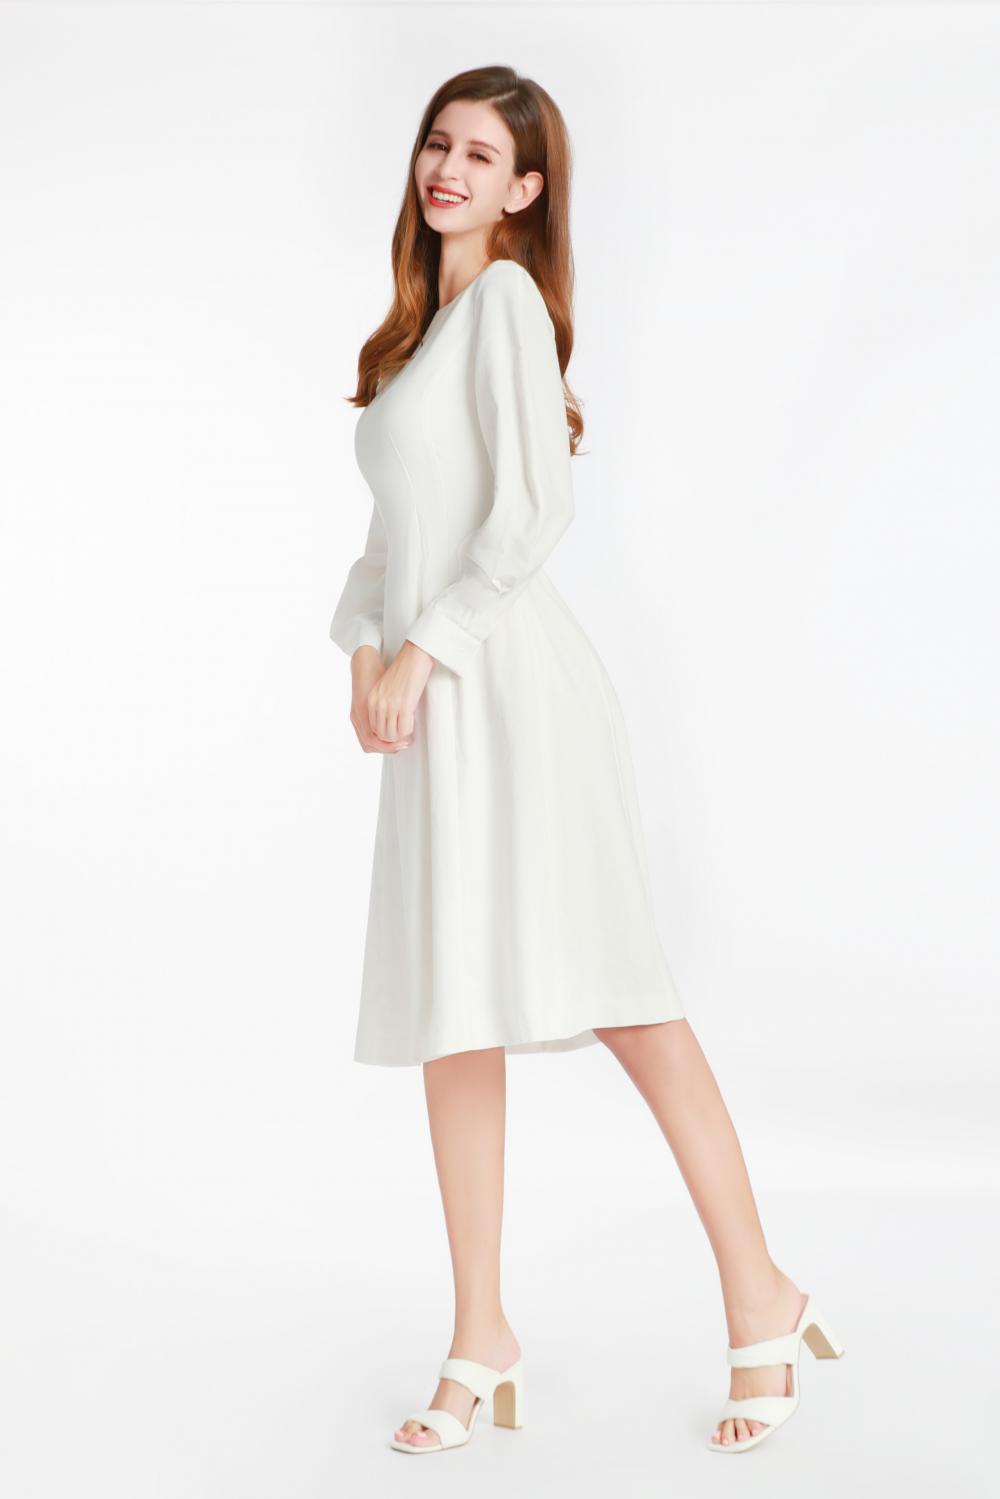 小さな丸い襟付きの白い長袖のドレス